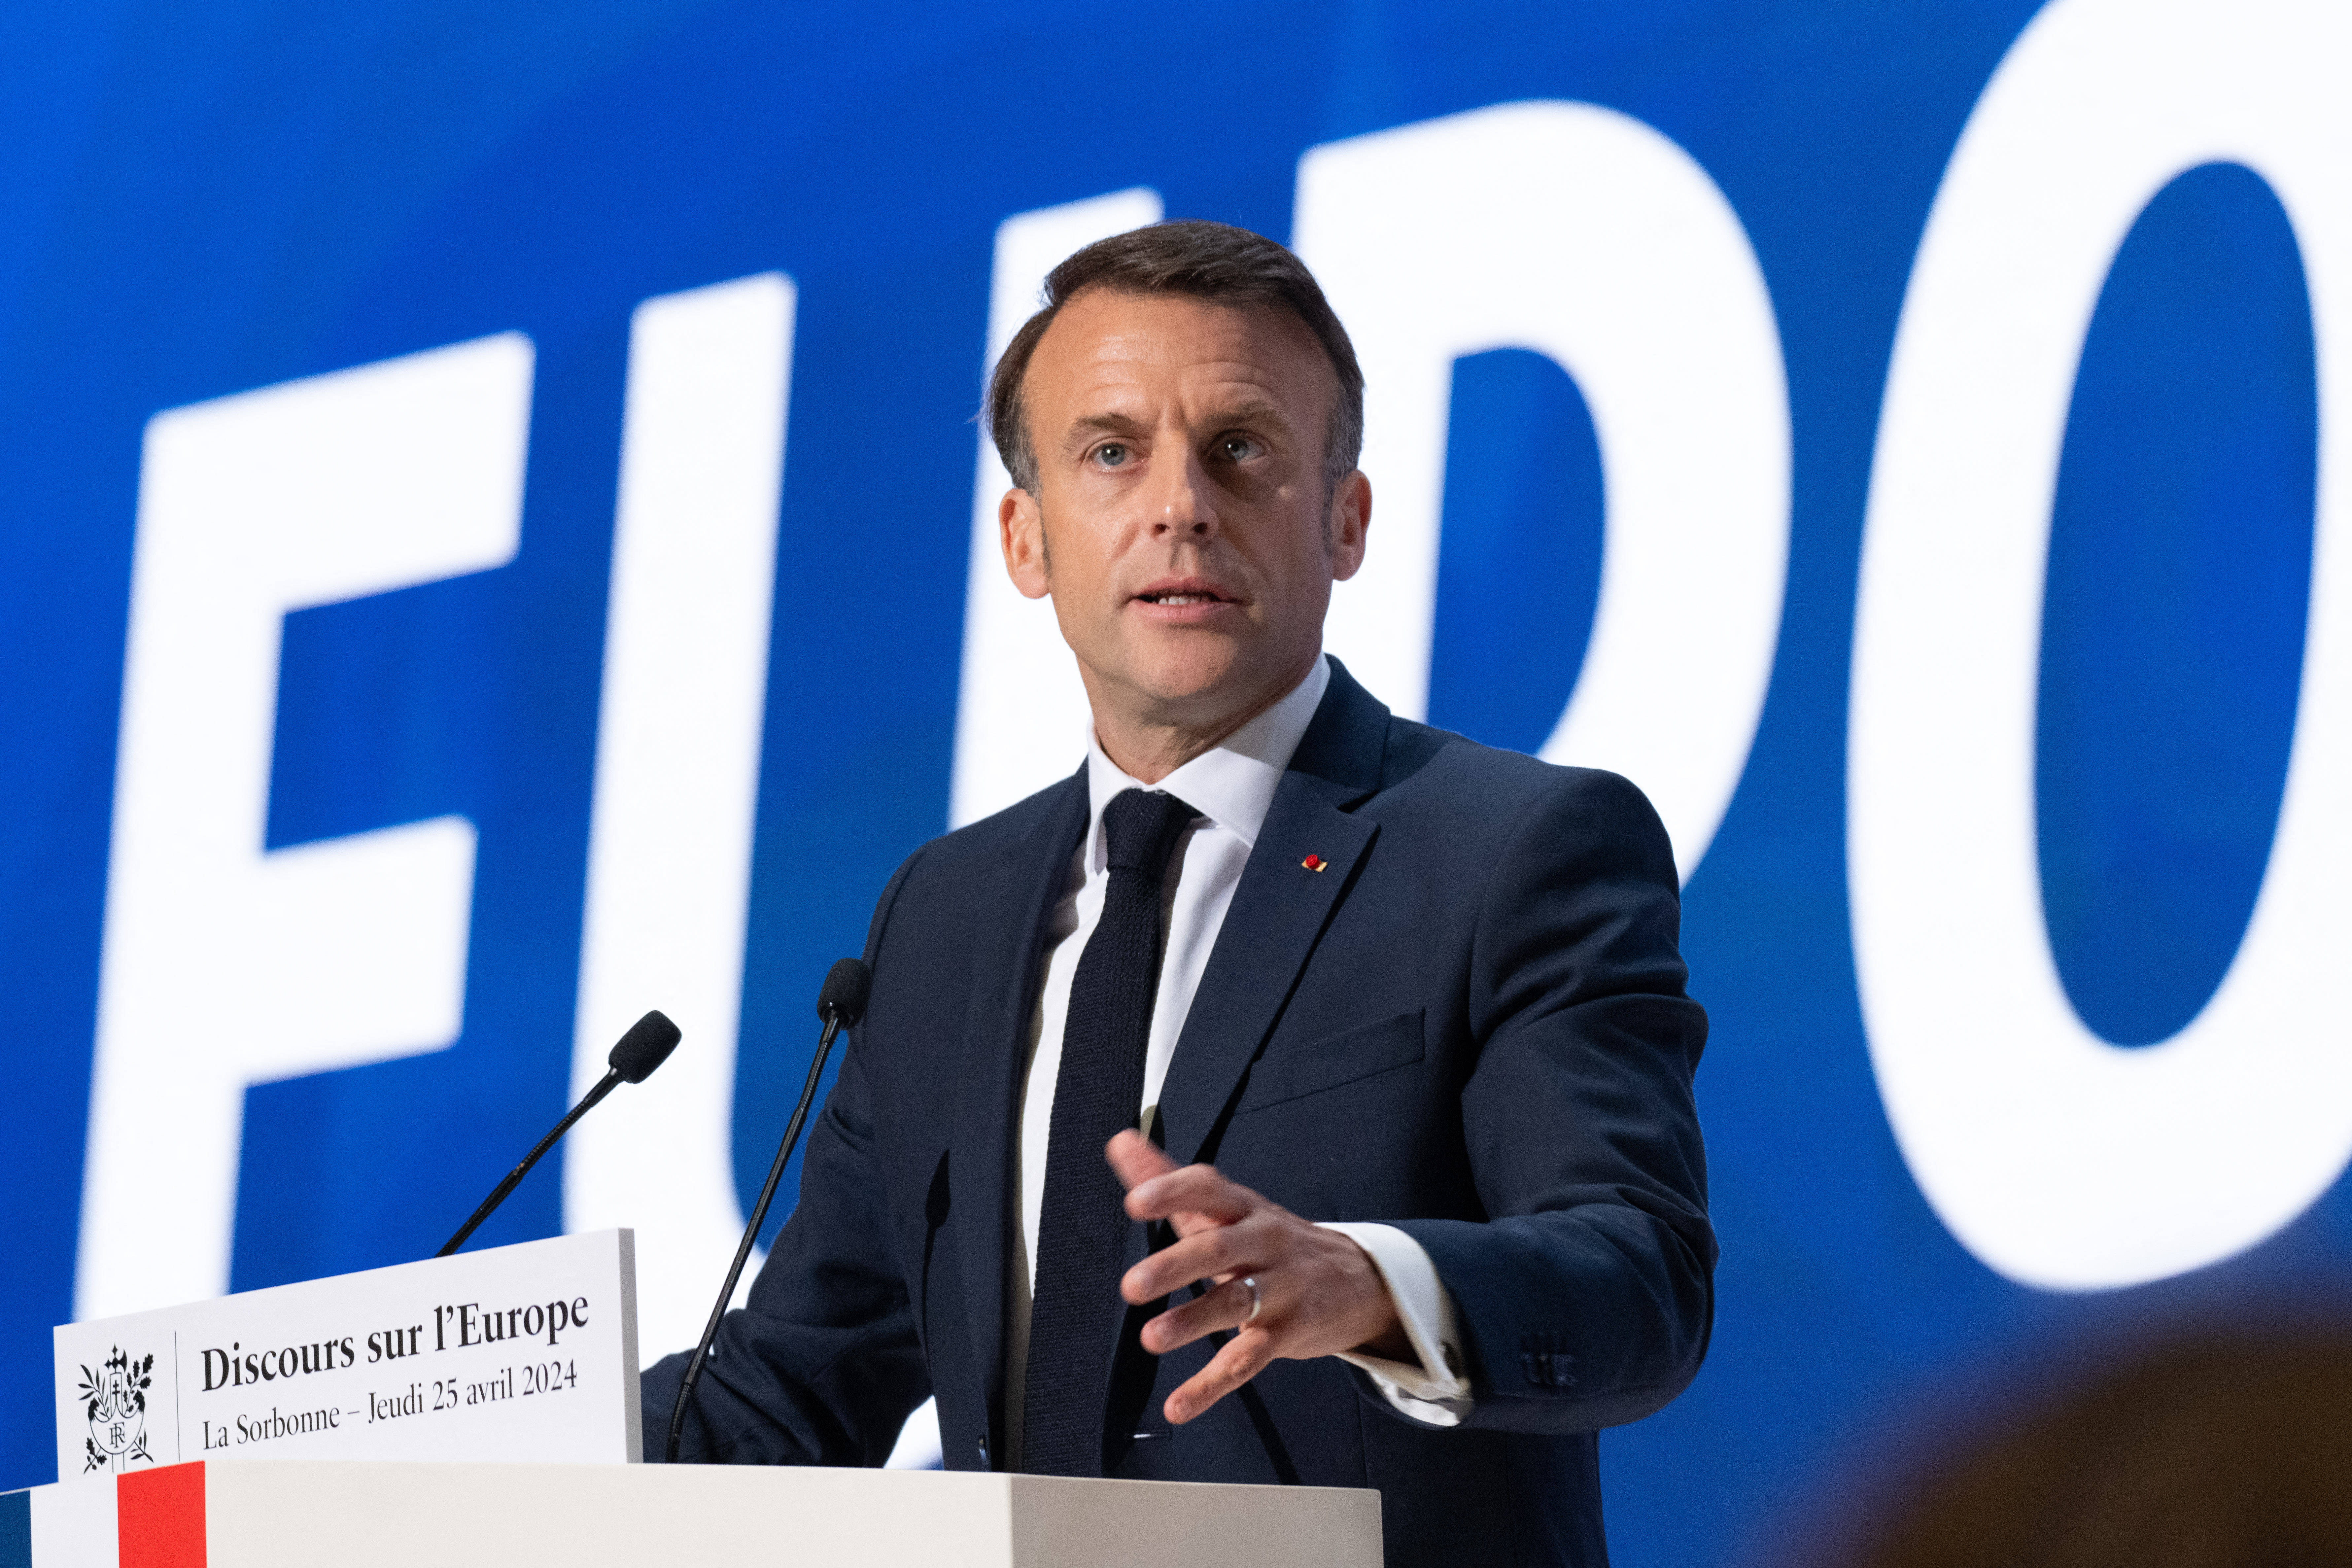 Ein Weckruf an Europa: Frankreichs Präsident Emmanuel Macron spricht am 25. April 2024 in der Pariser Universität Sorbonne.